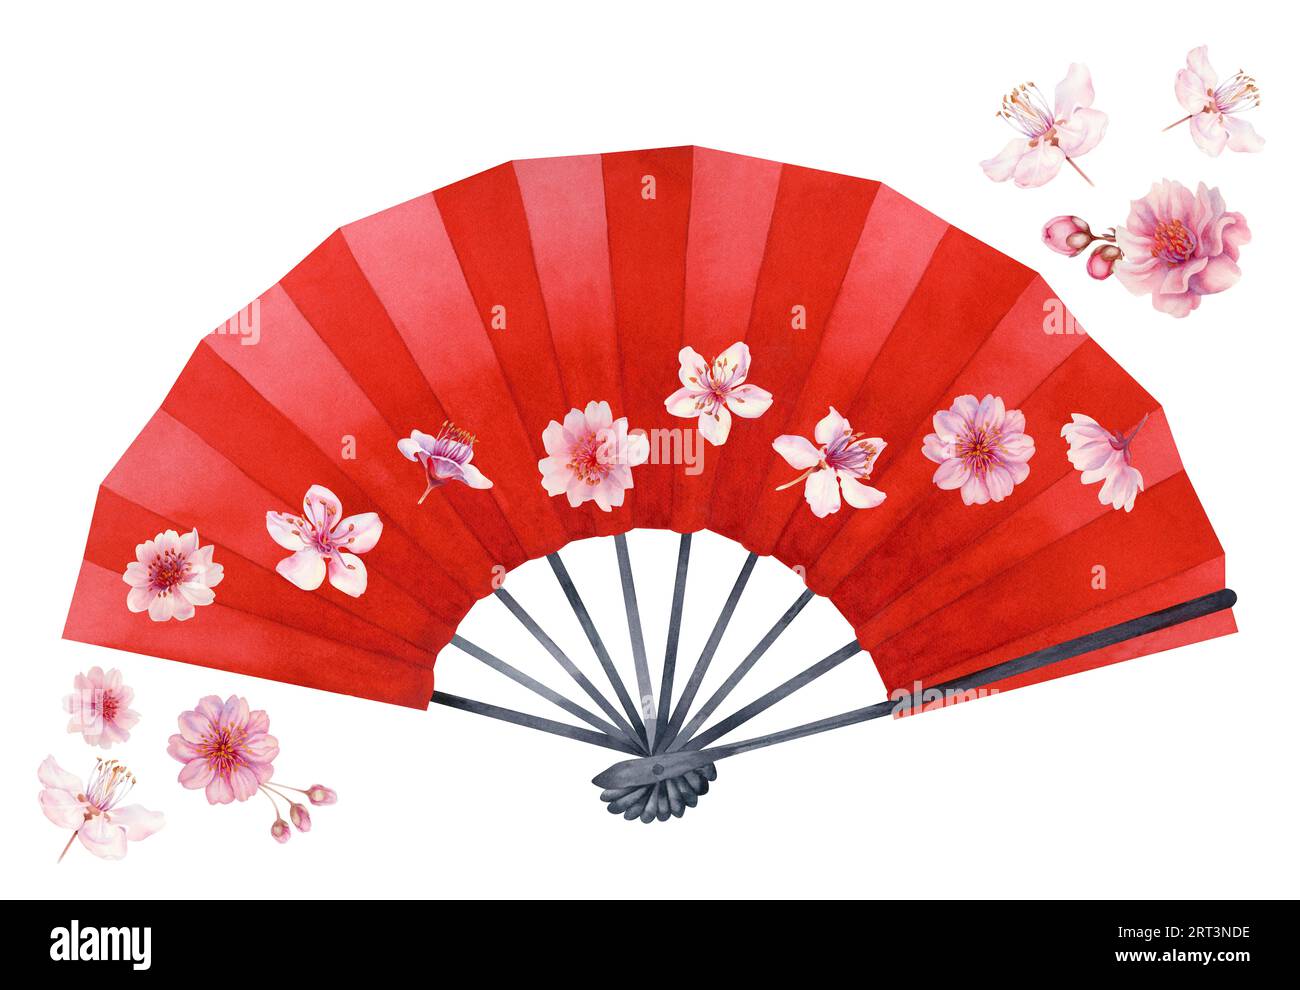 Illustrazione ad acquerello di un ventilatore a mano di carta aperto rosso con fiori di ciliegio. Elemento isolato su sfondo bianco Foto Stock